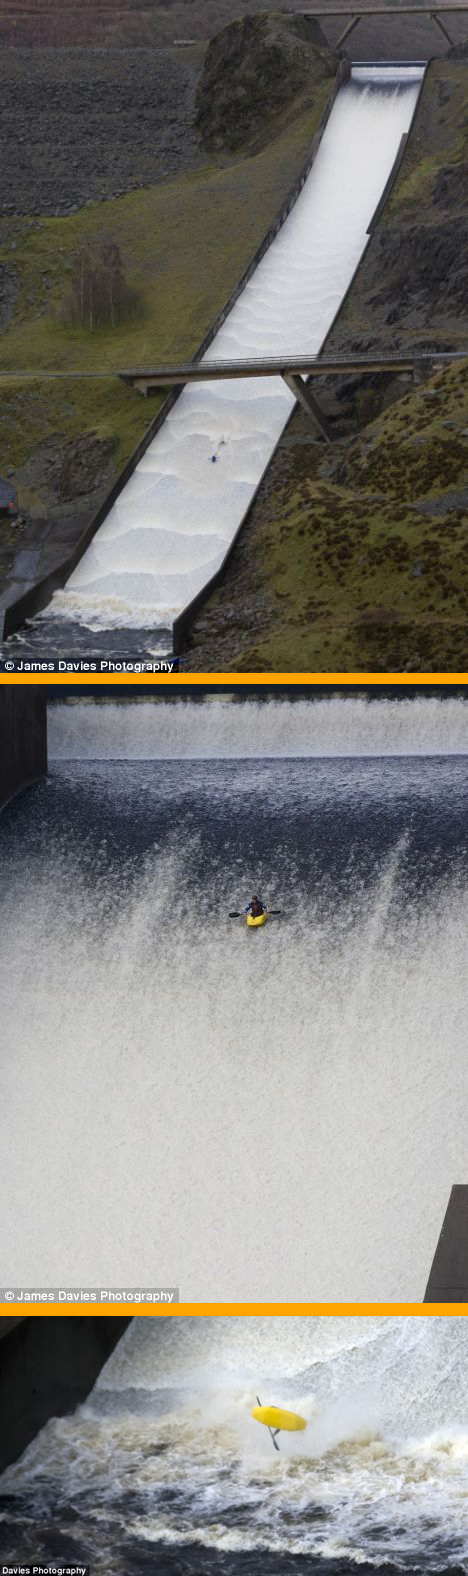 Die besten 100 Bilder in der Kategorie unglaublich: Unglaubliche Wasserrutsche mit dem Kajak